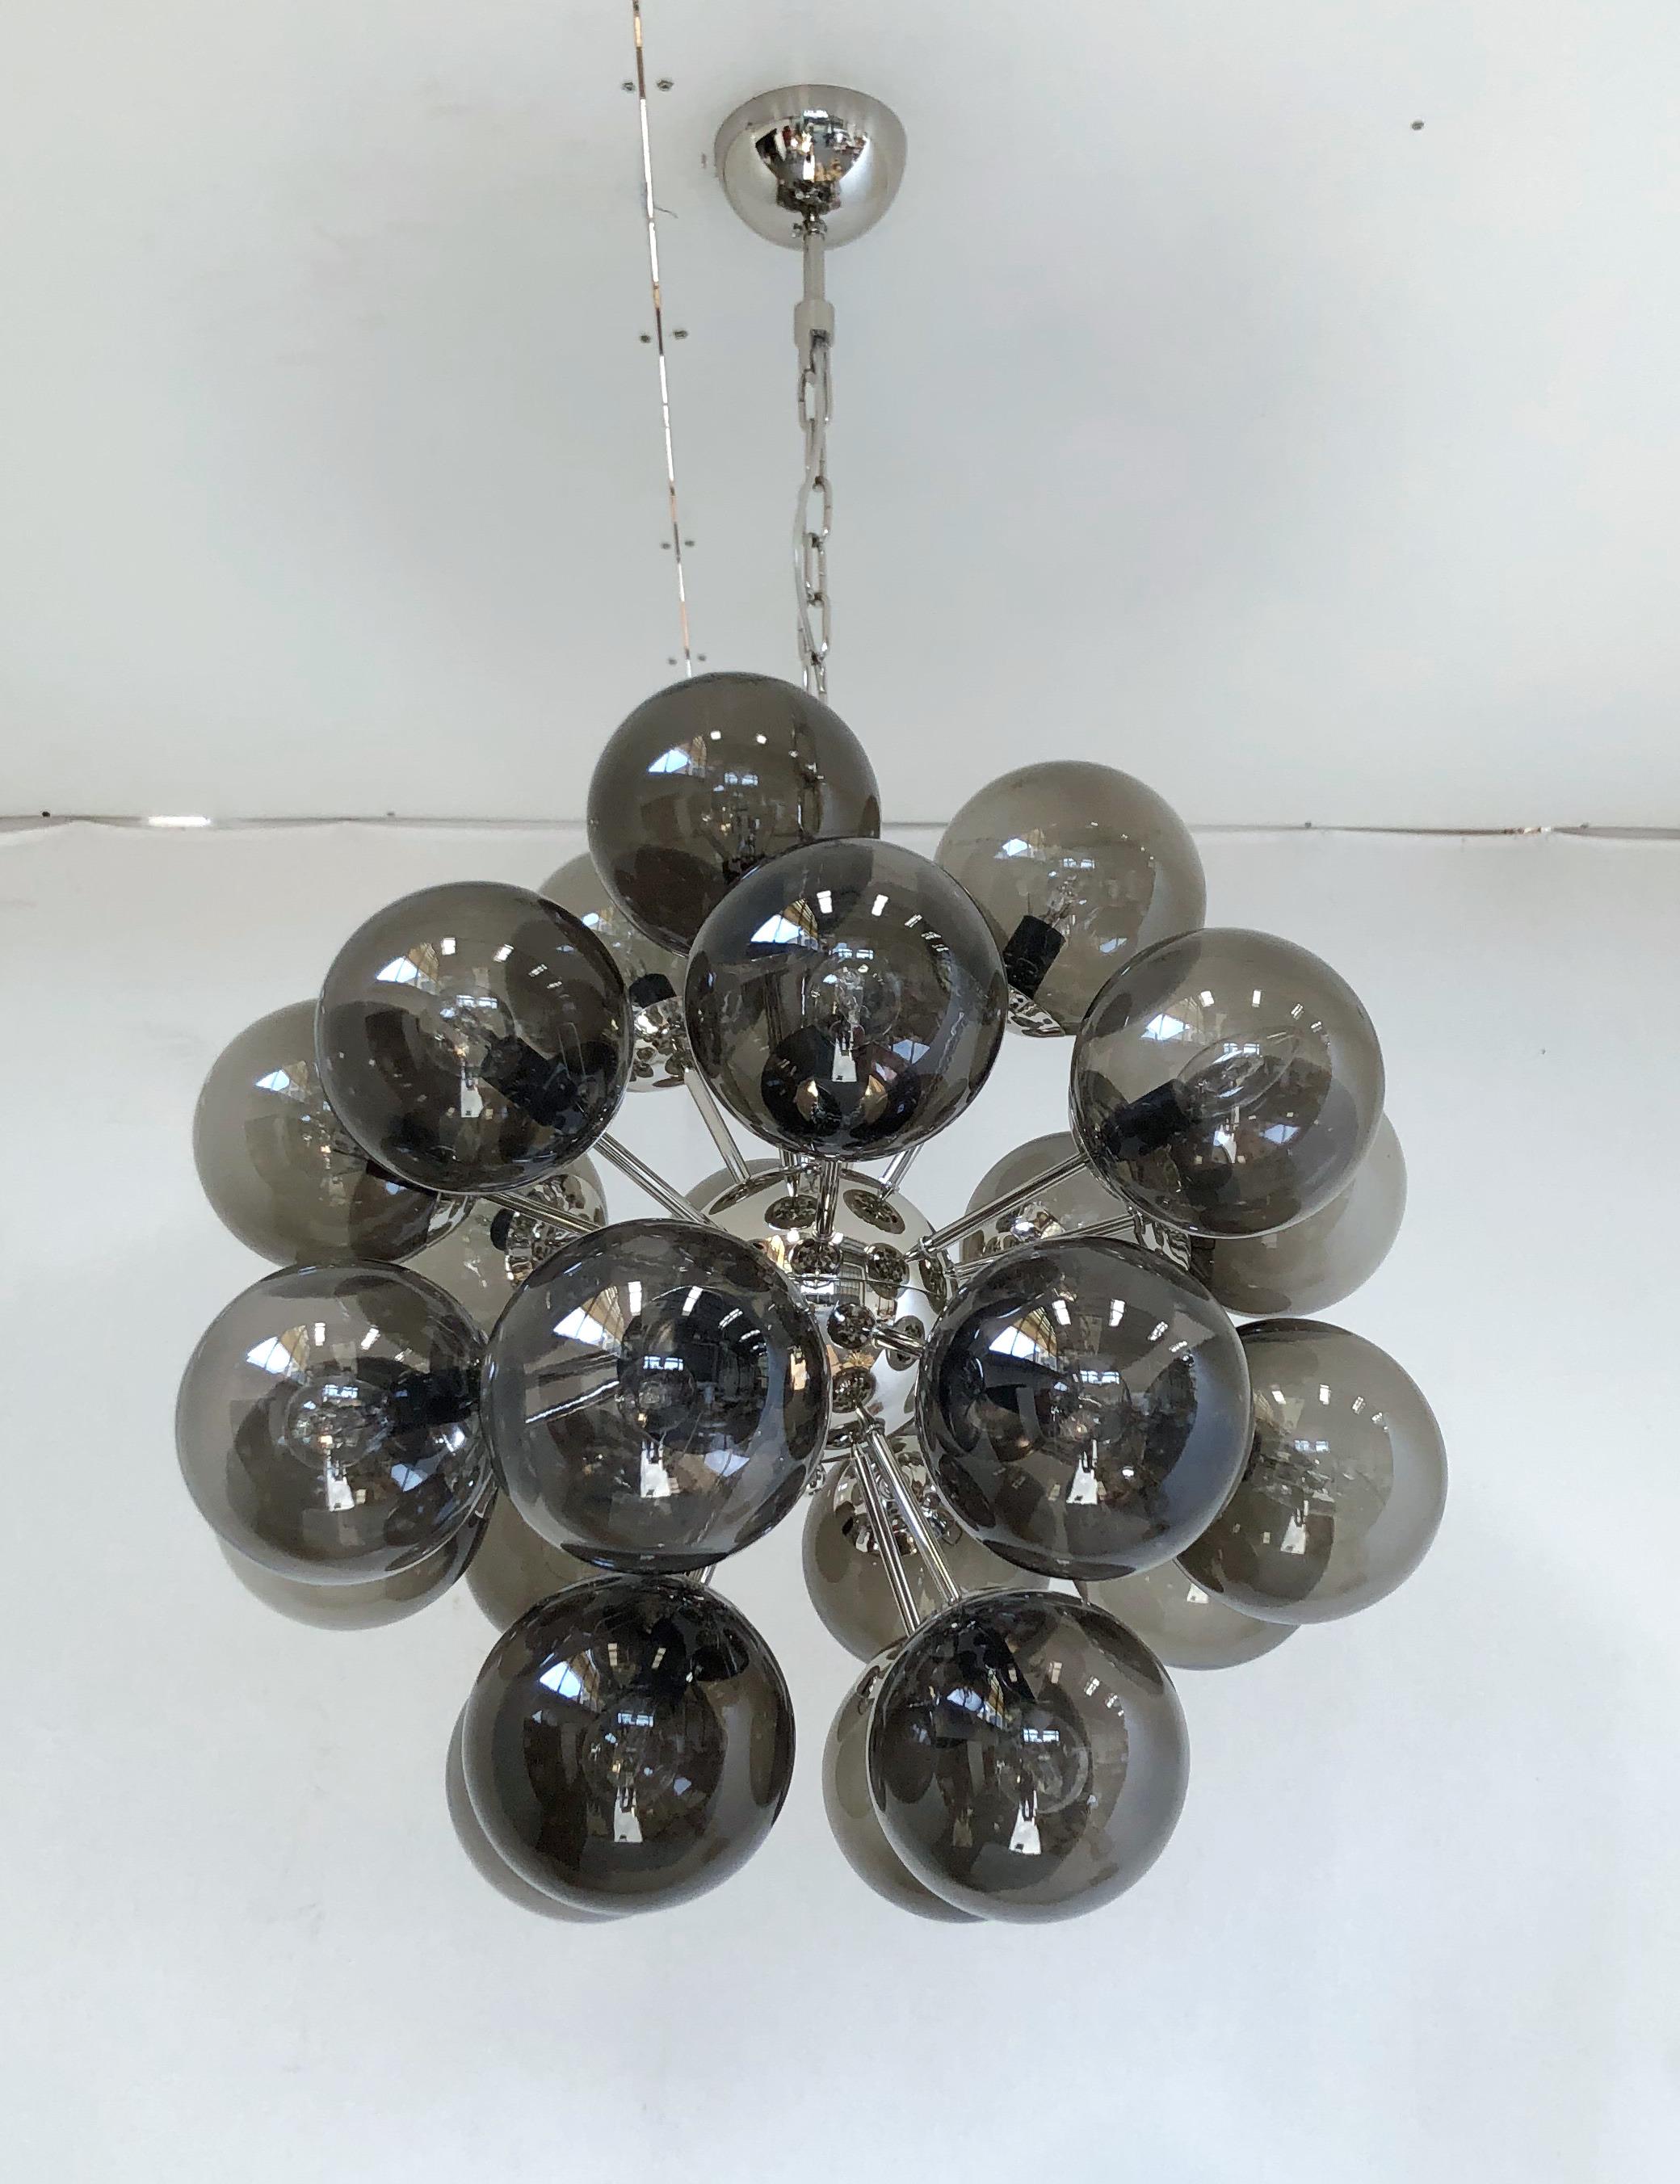 Lustre italien en forme de sputnik avec 24 globes en verre de Murano montés sur une structure métallique en finition nickel poli / conçu par Fabio Bergomi pour Fabio Ltd / Fabriqué en Italie.
24 lampes / type E12 ou E14 / max 40W chacune
Mesures :